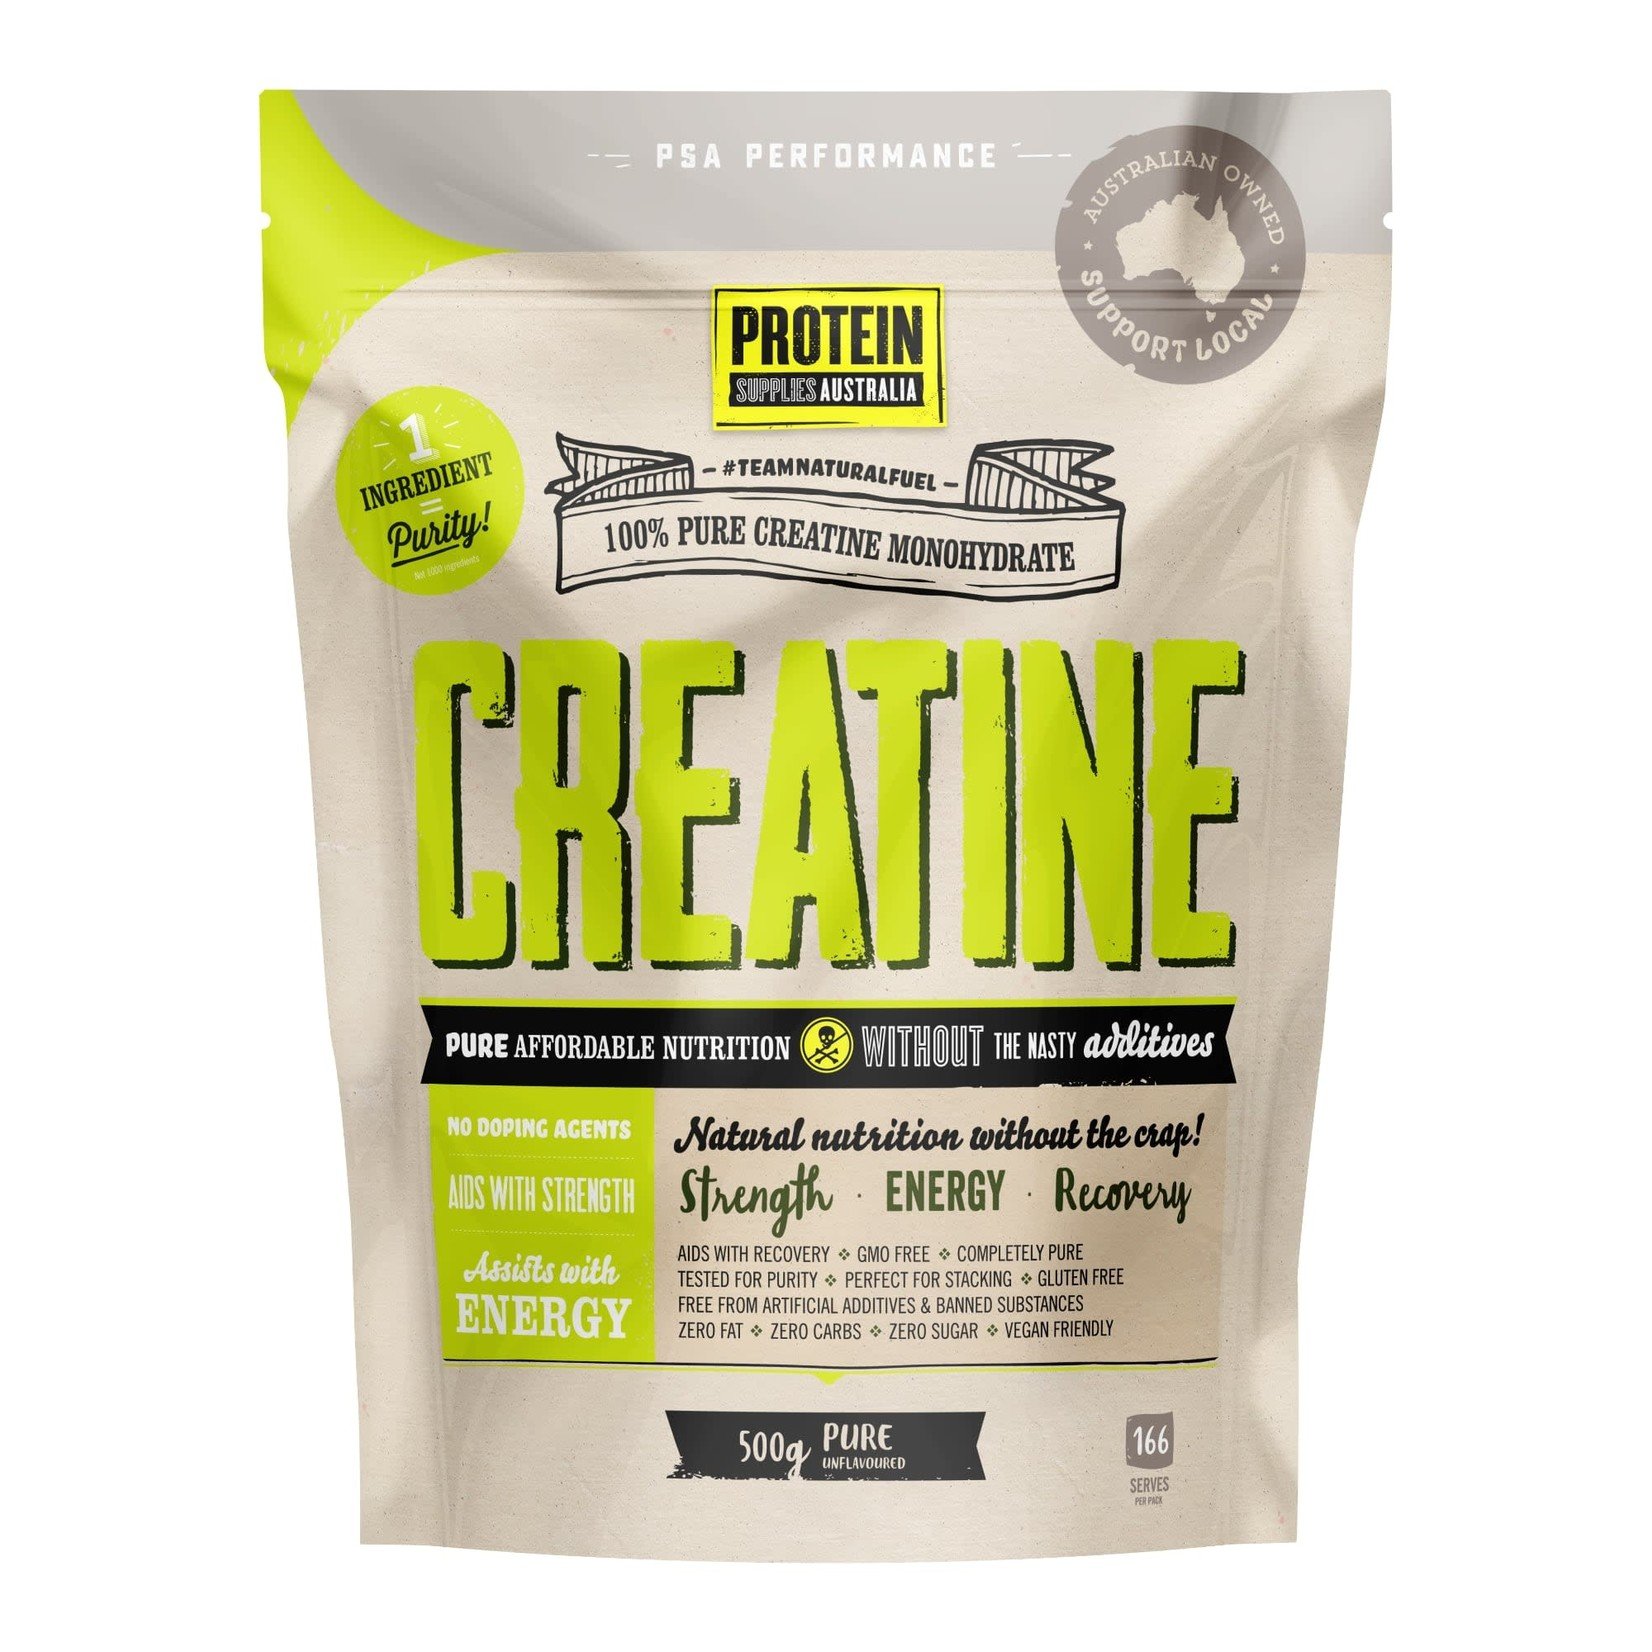 Protein Supplies Australia Protein Supplies Australia Creatine (Monohydrate) Unflavoured 500g